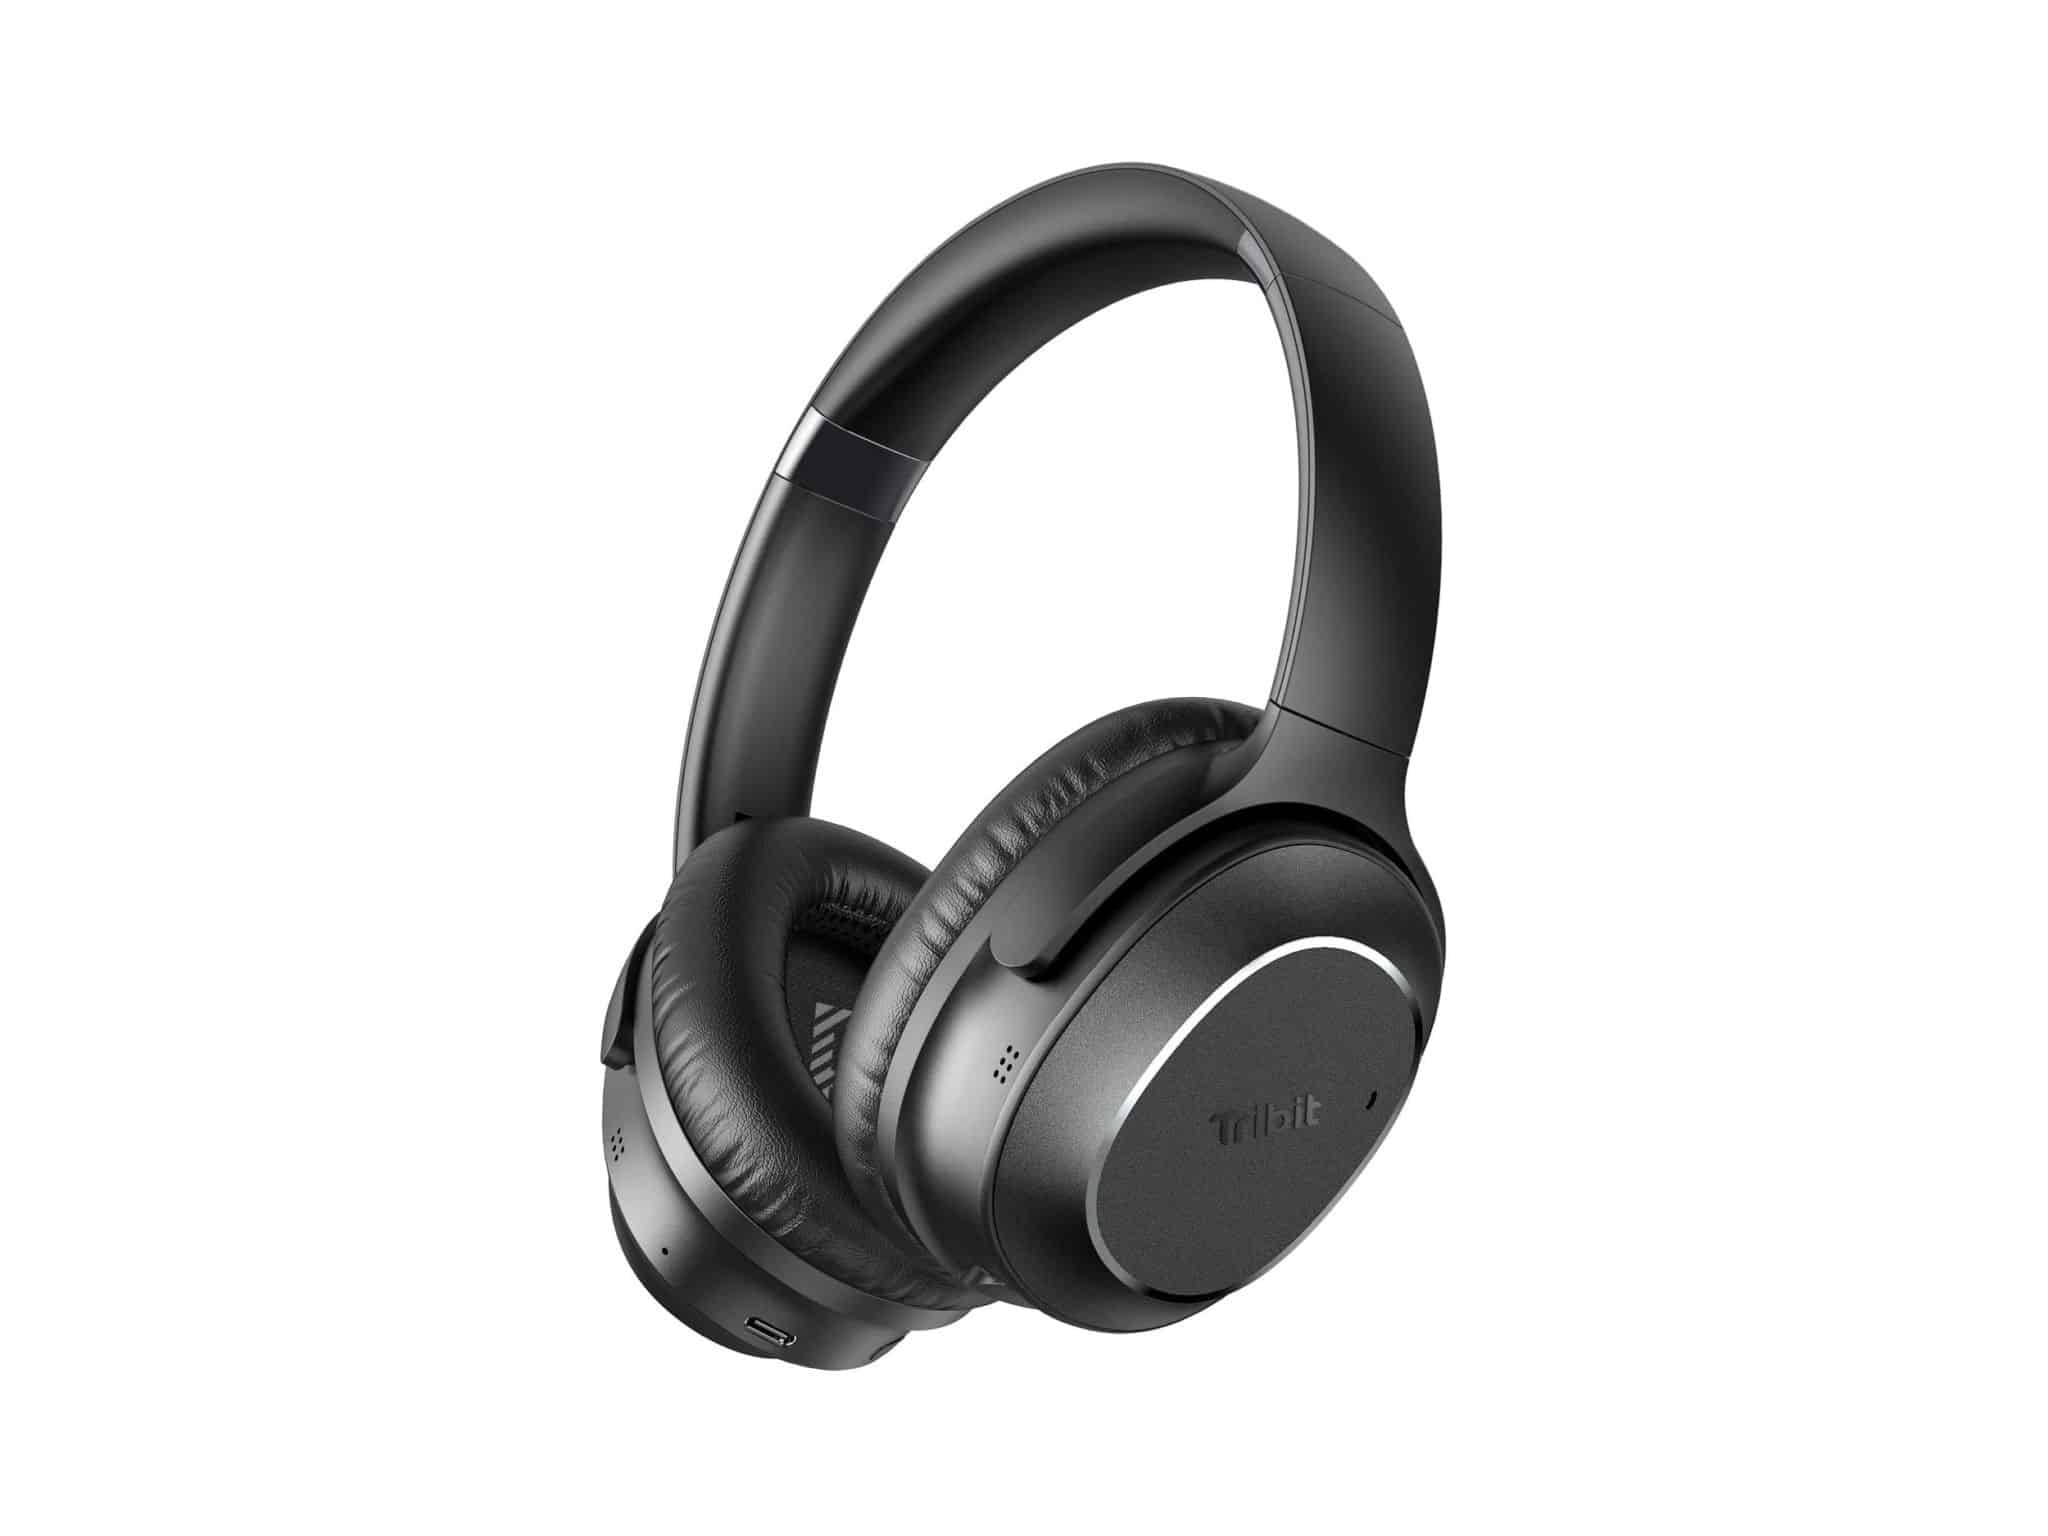 Tribit 32dB Active Noise Cancelling Headphones